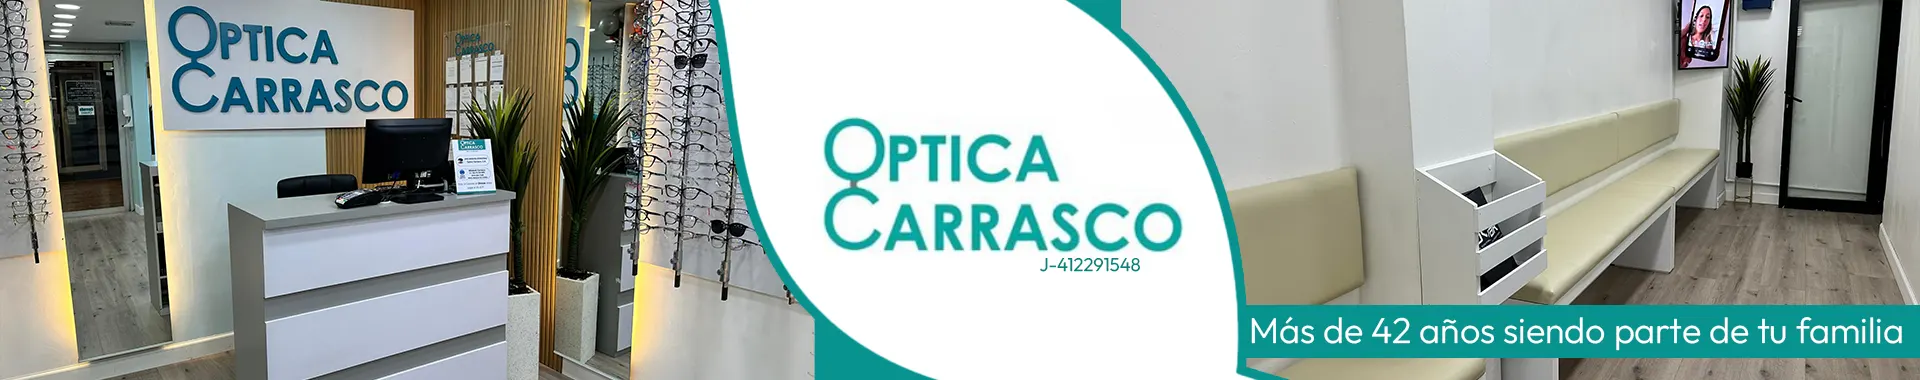 Imagen 1 del perfil de Óptica Carrasco